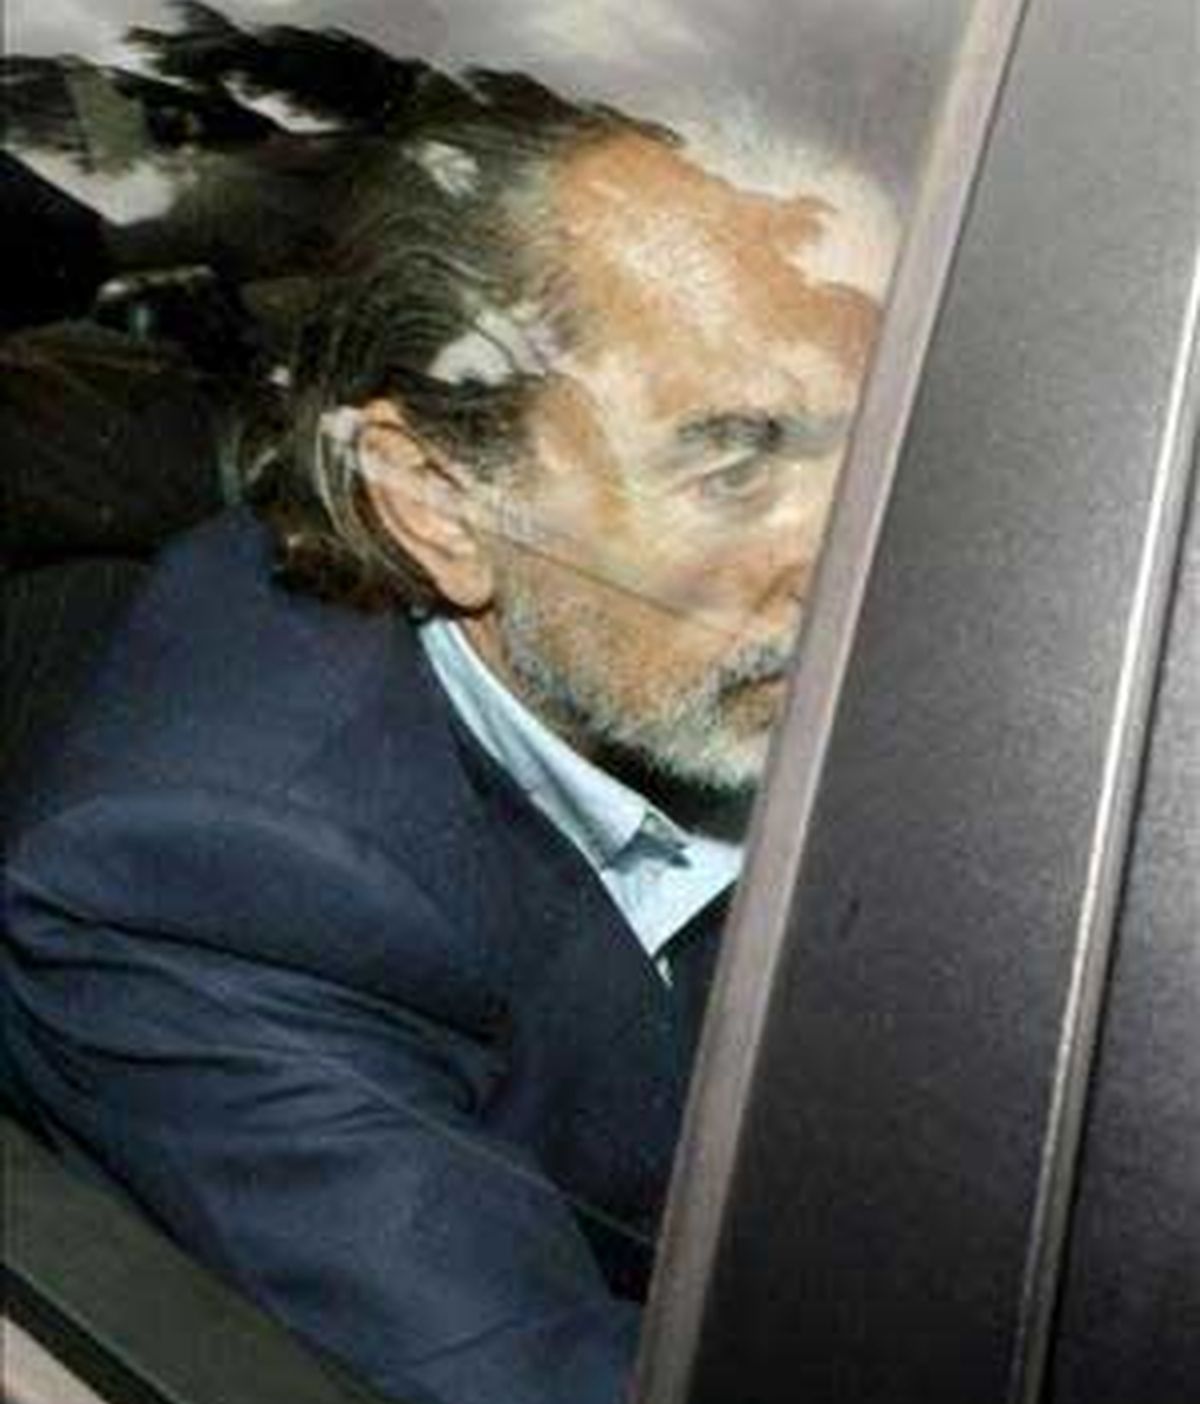 Los tentáculos de Correa en el partido se fueron extendiendo con la llegada de los viajes internacionales junto a Aznar. Vídeo: Informativos Telecinco